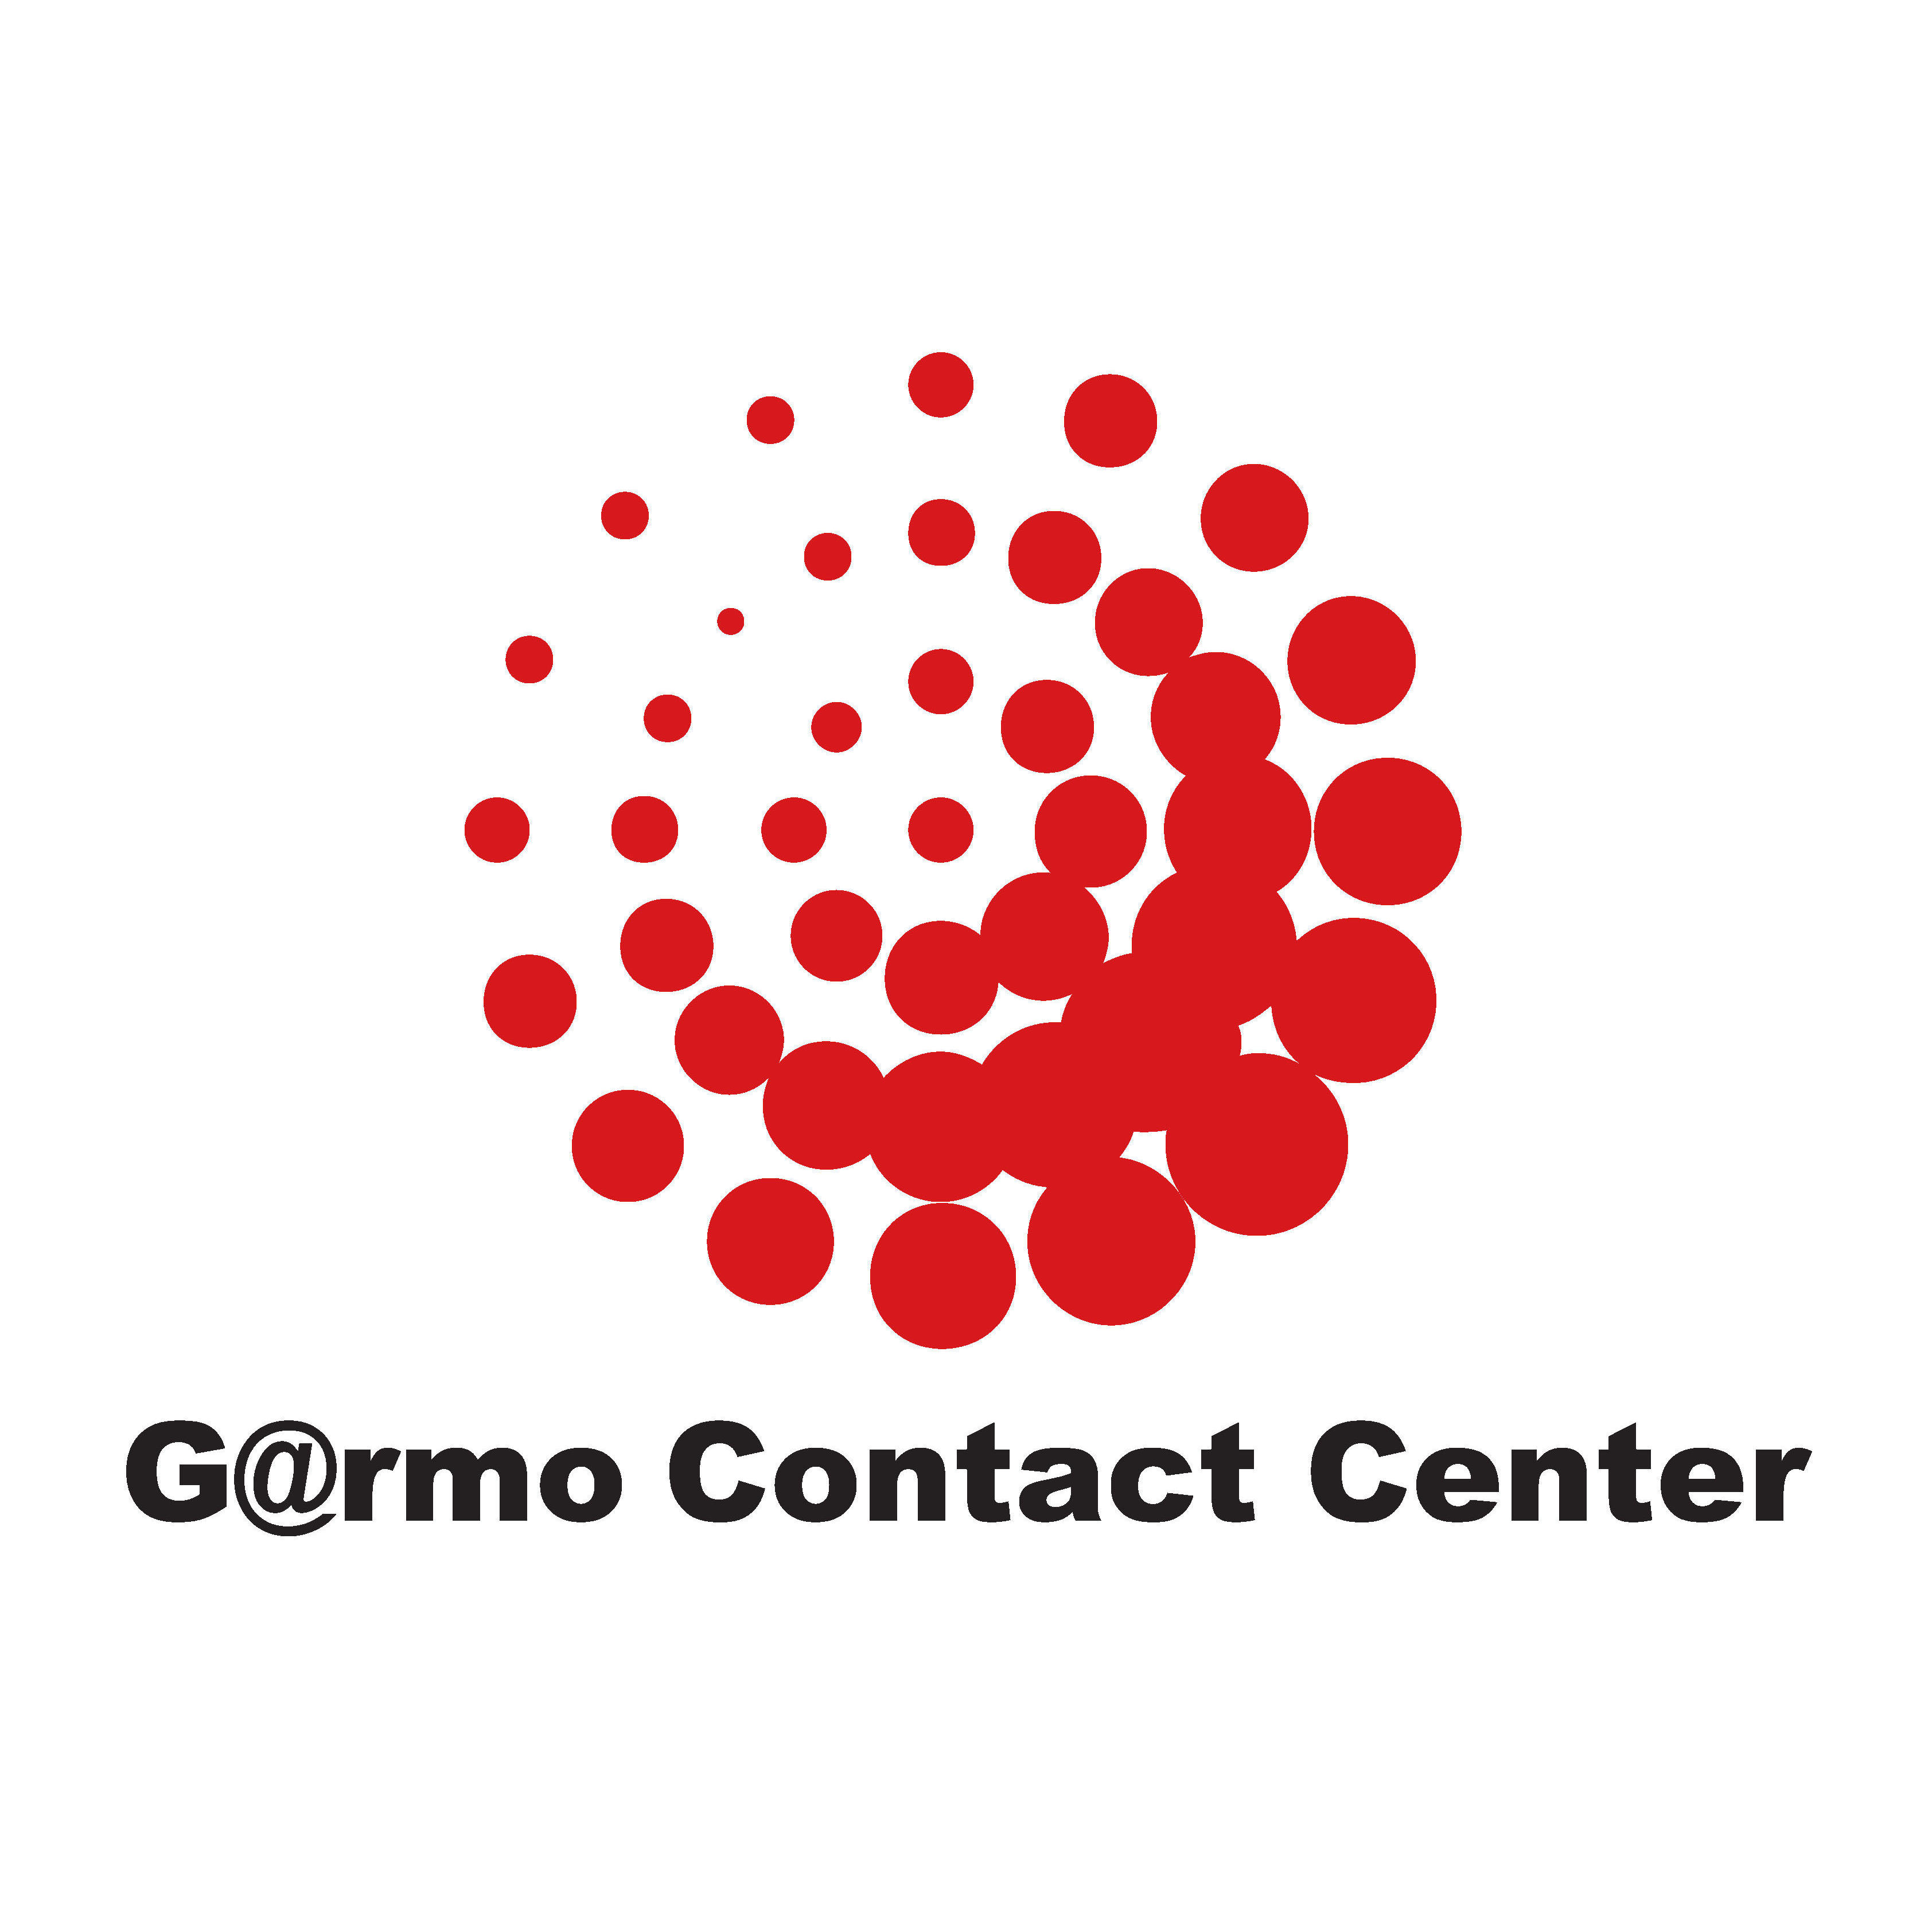 Garmo Contact Center Monóvar